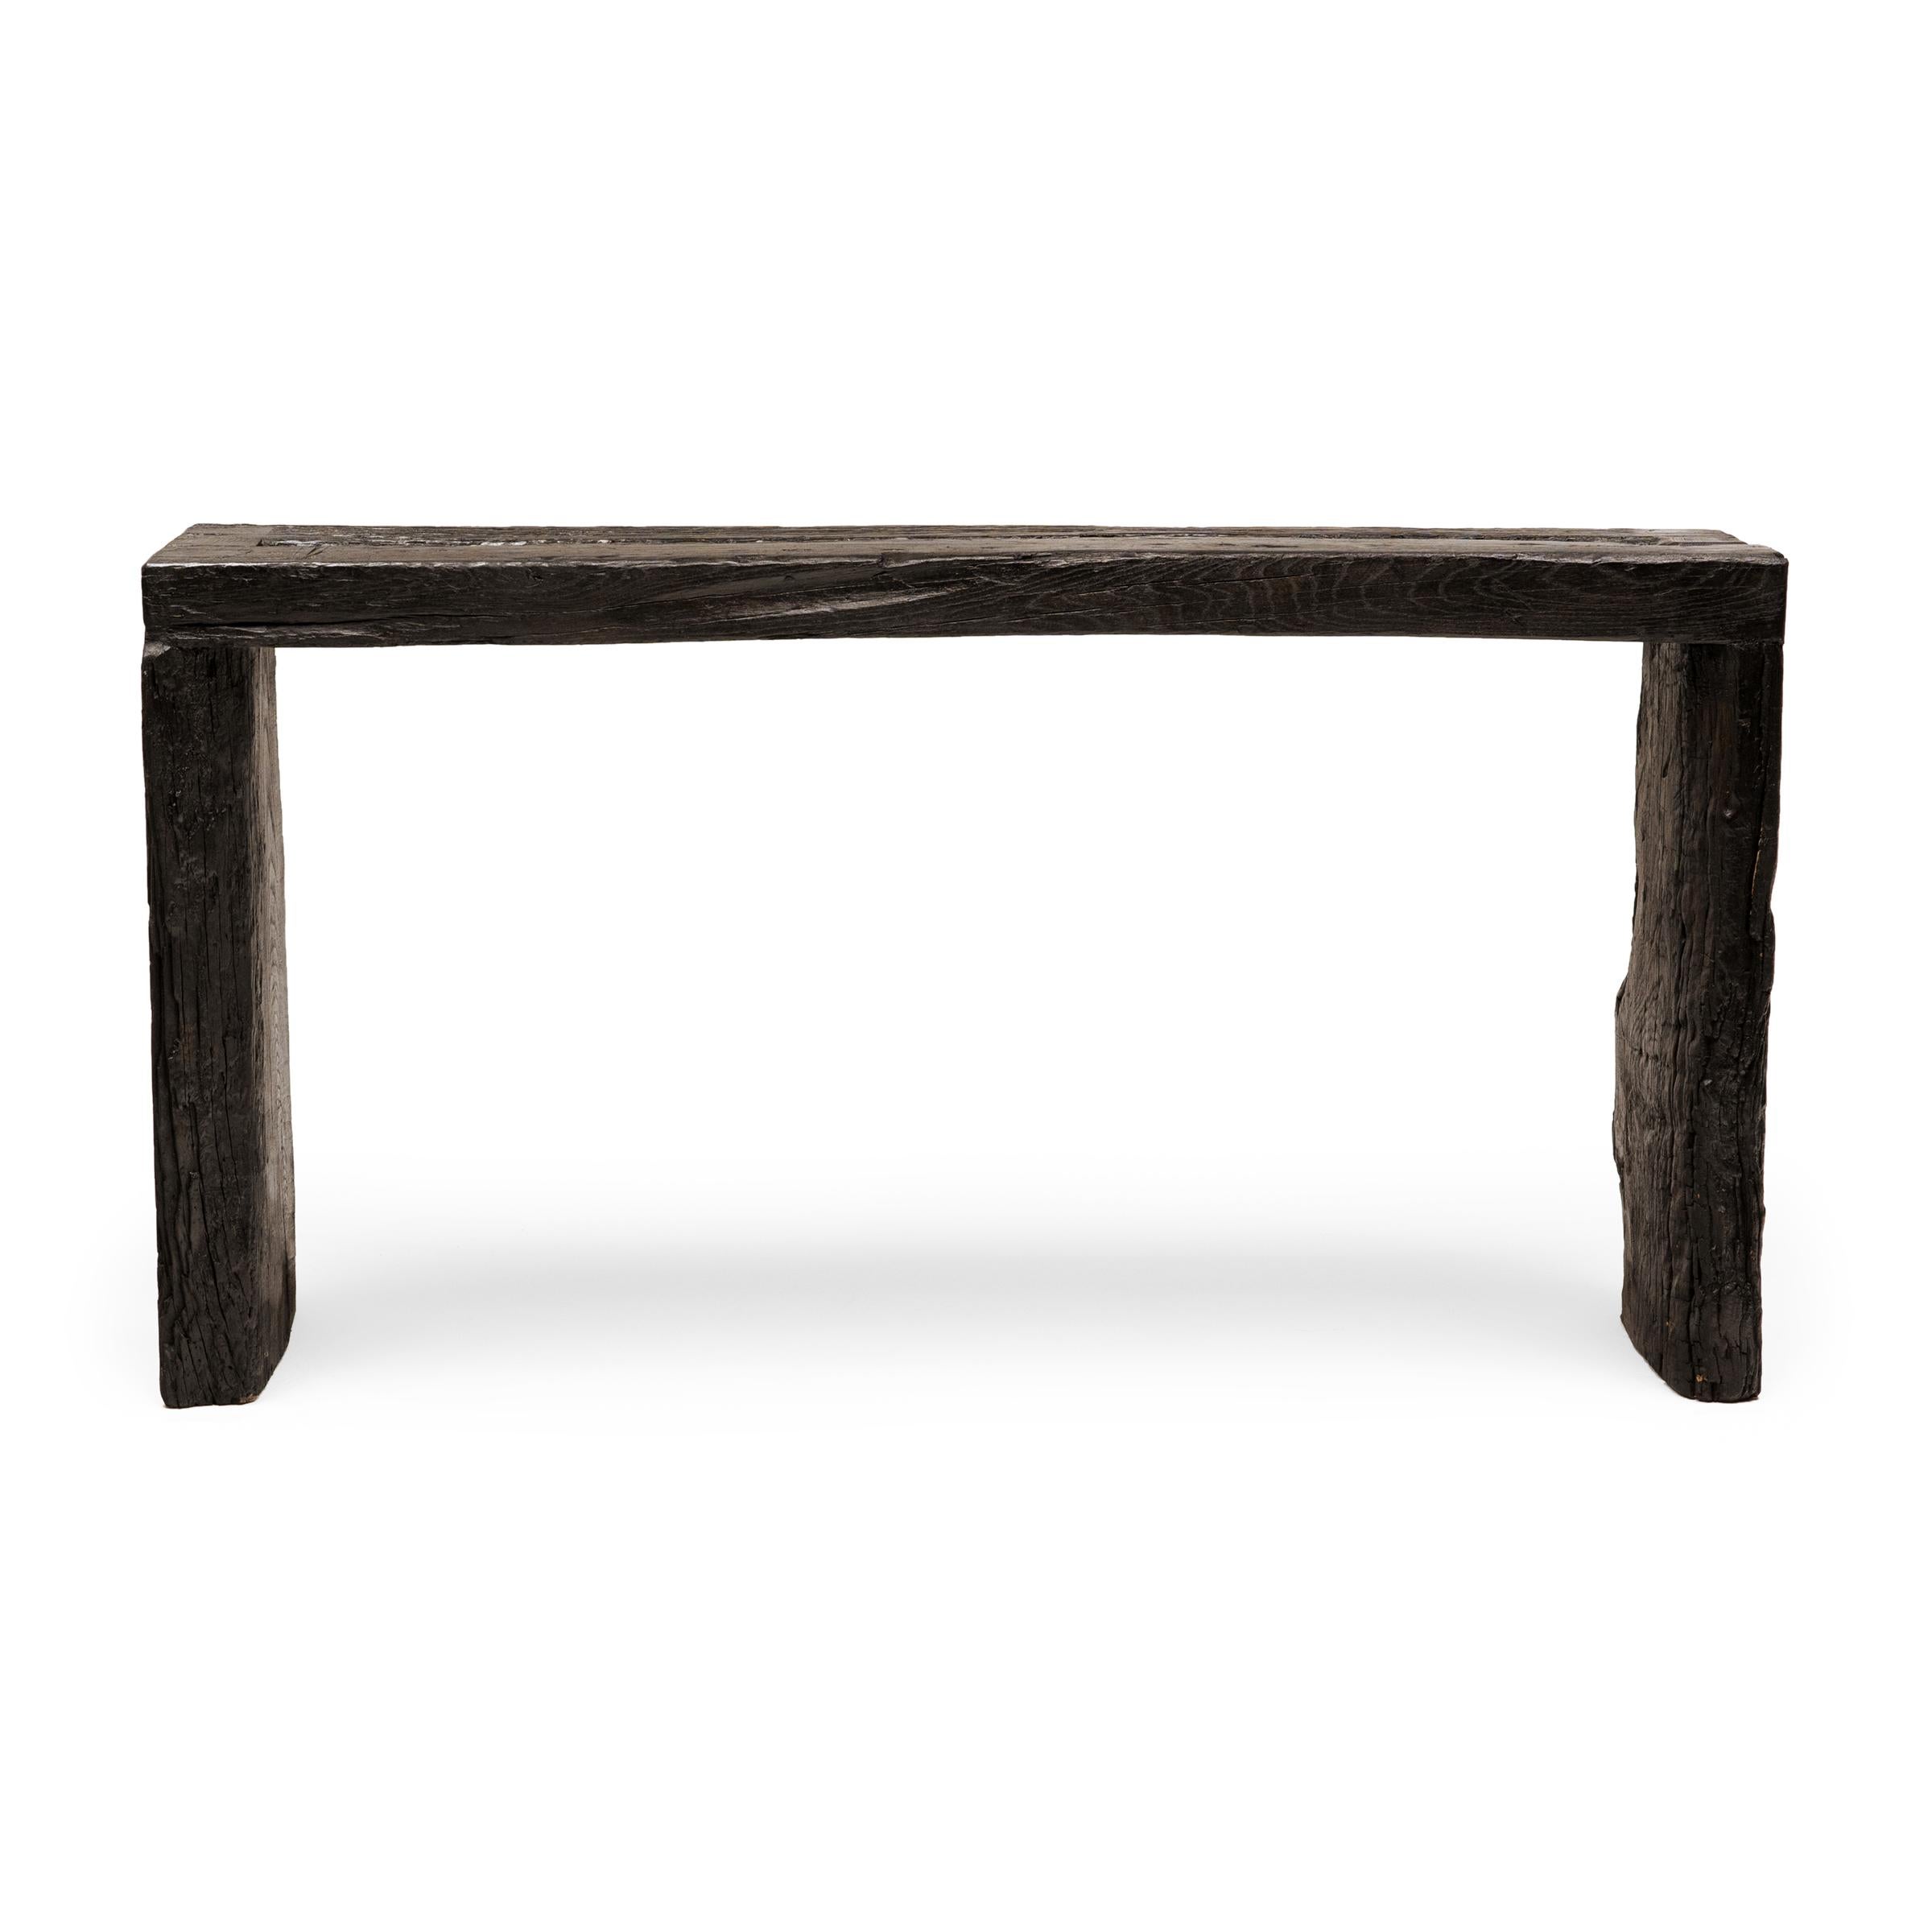 Dieser moderne Konsolentisch ist eine Zelebrierung des Wabi-Sabi-Stils. Der Tisch ist aus Holz gefertigt, das aus der Architektur der Qing-Dynastie stammt, und hat ein minimalistisches Wasserfalldesign mit schwalbenschwanzförmigen Ecken, die